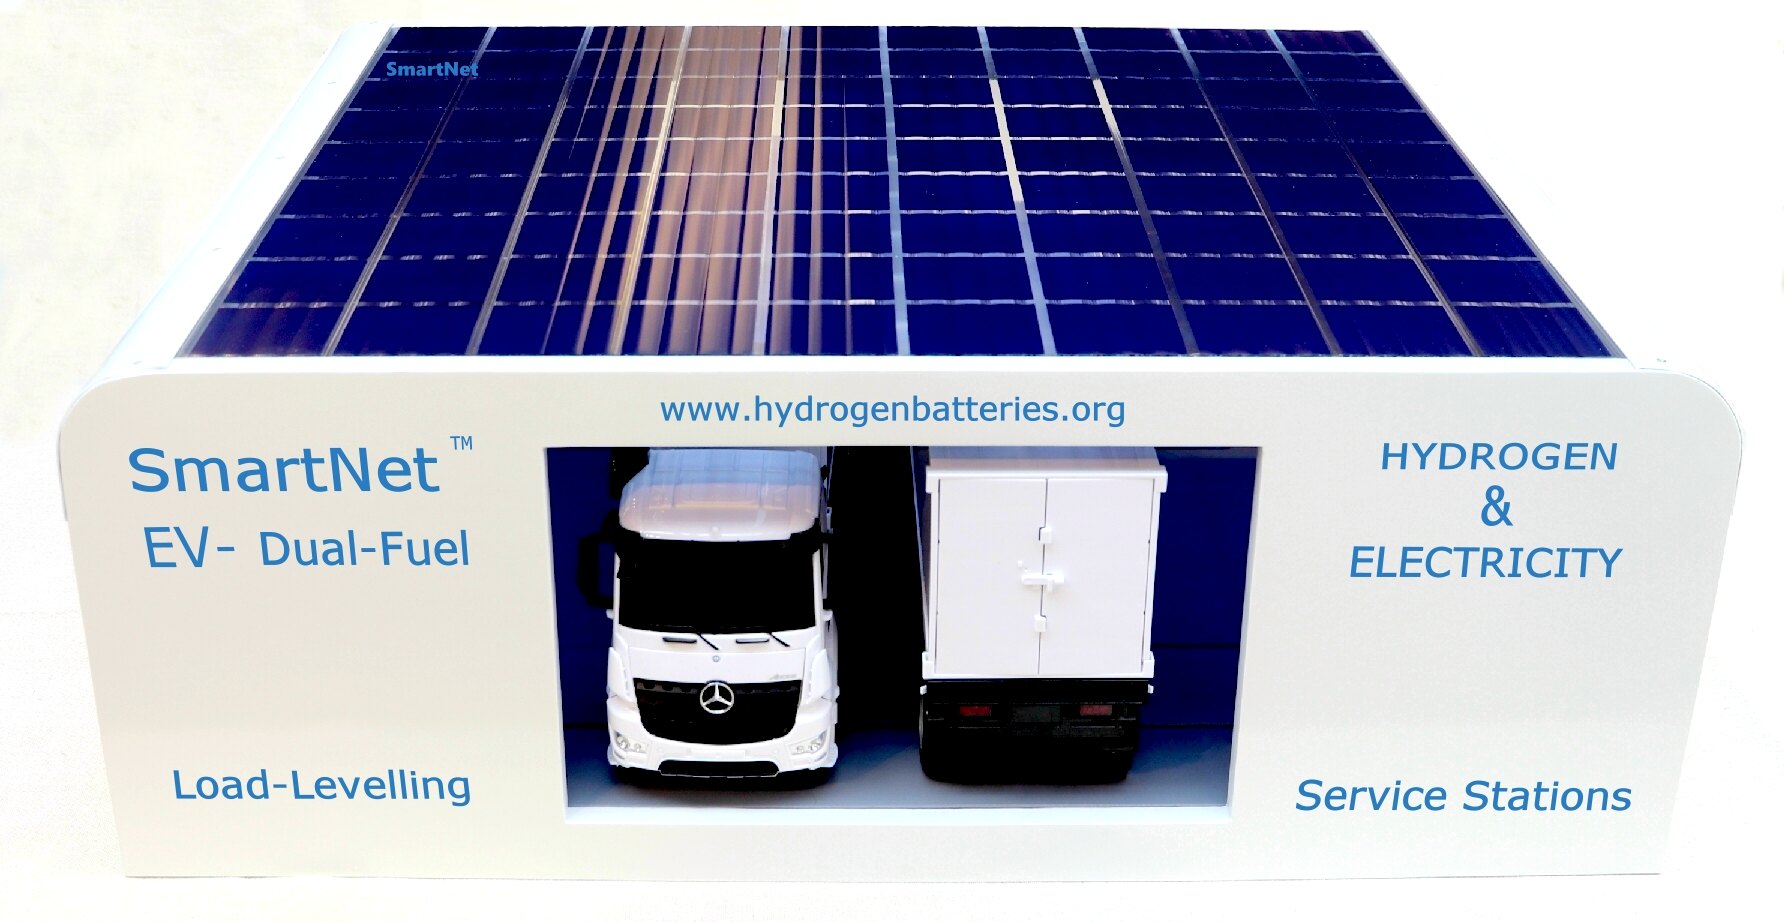 SmartNet EV service stations, hydrogen and battery vending